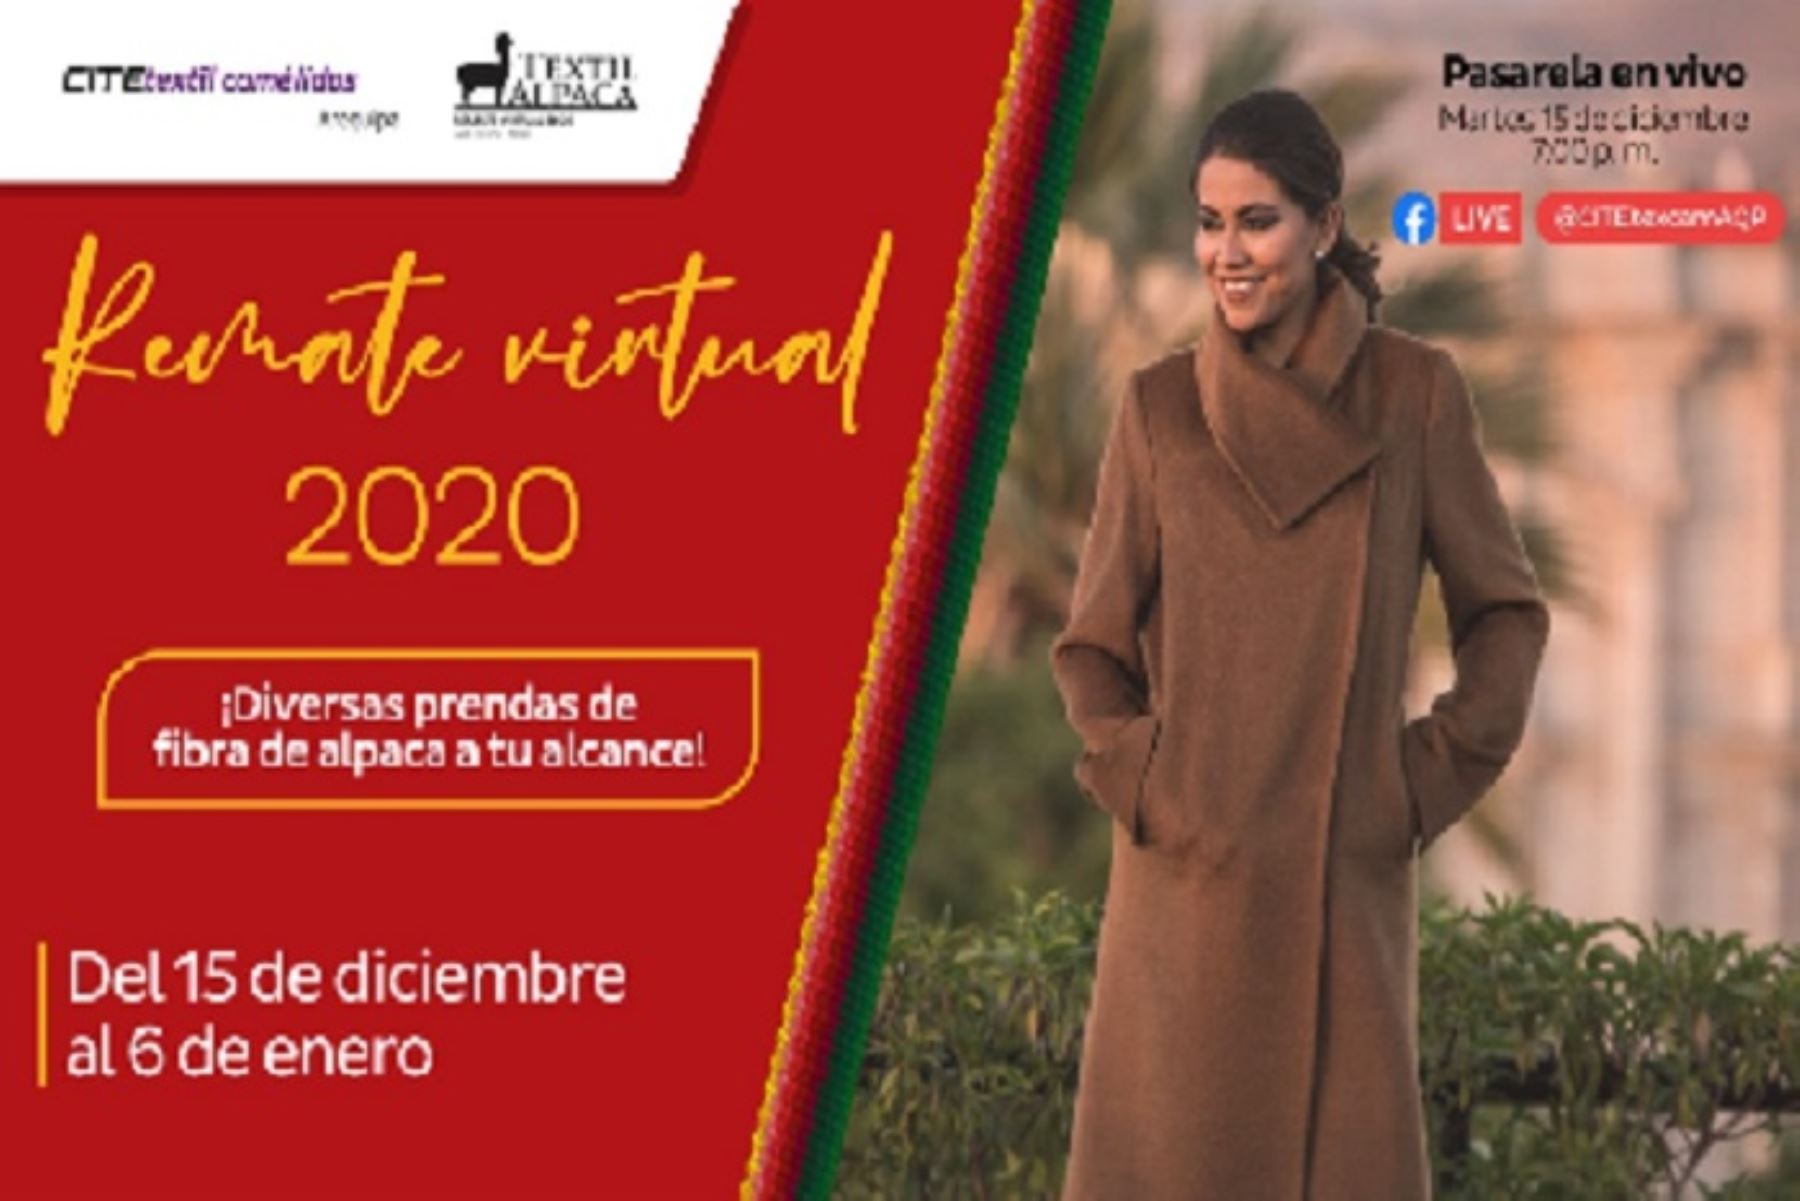 “Remate digital 2020” será transmitido vía online por la web del CITEtextil Camélidos Arequipa  https://www.facebook.com/CITEtexcamAQP a las 19:00 horas.